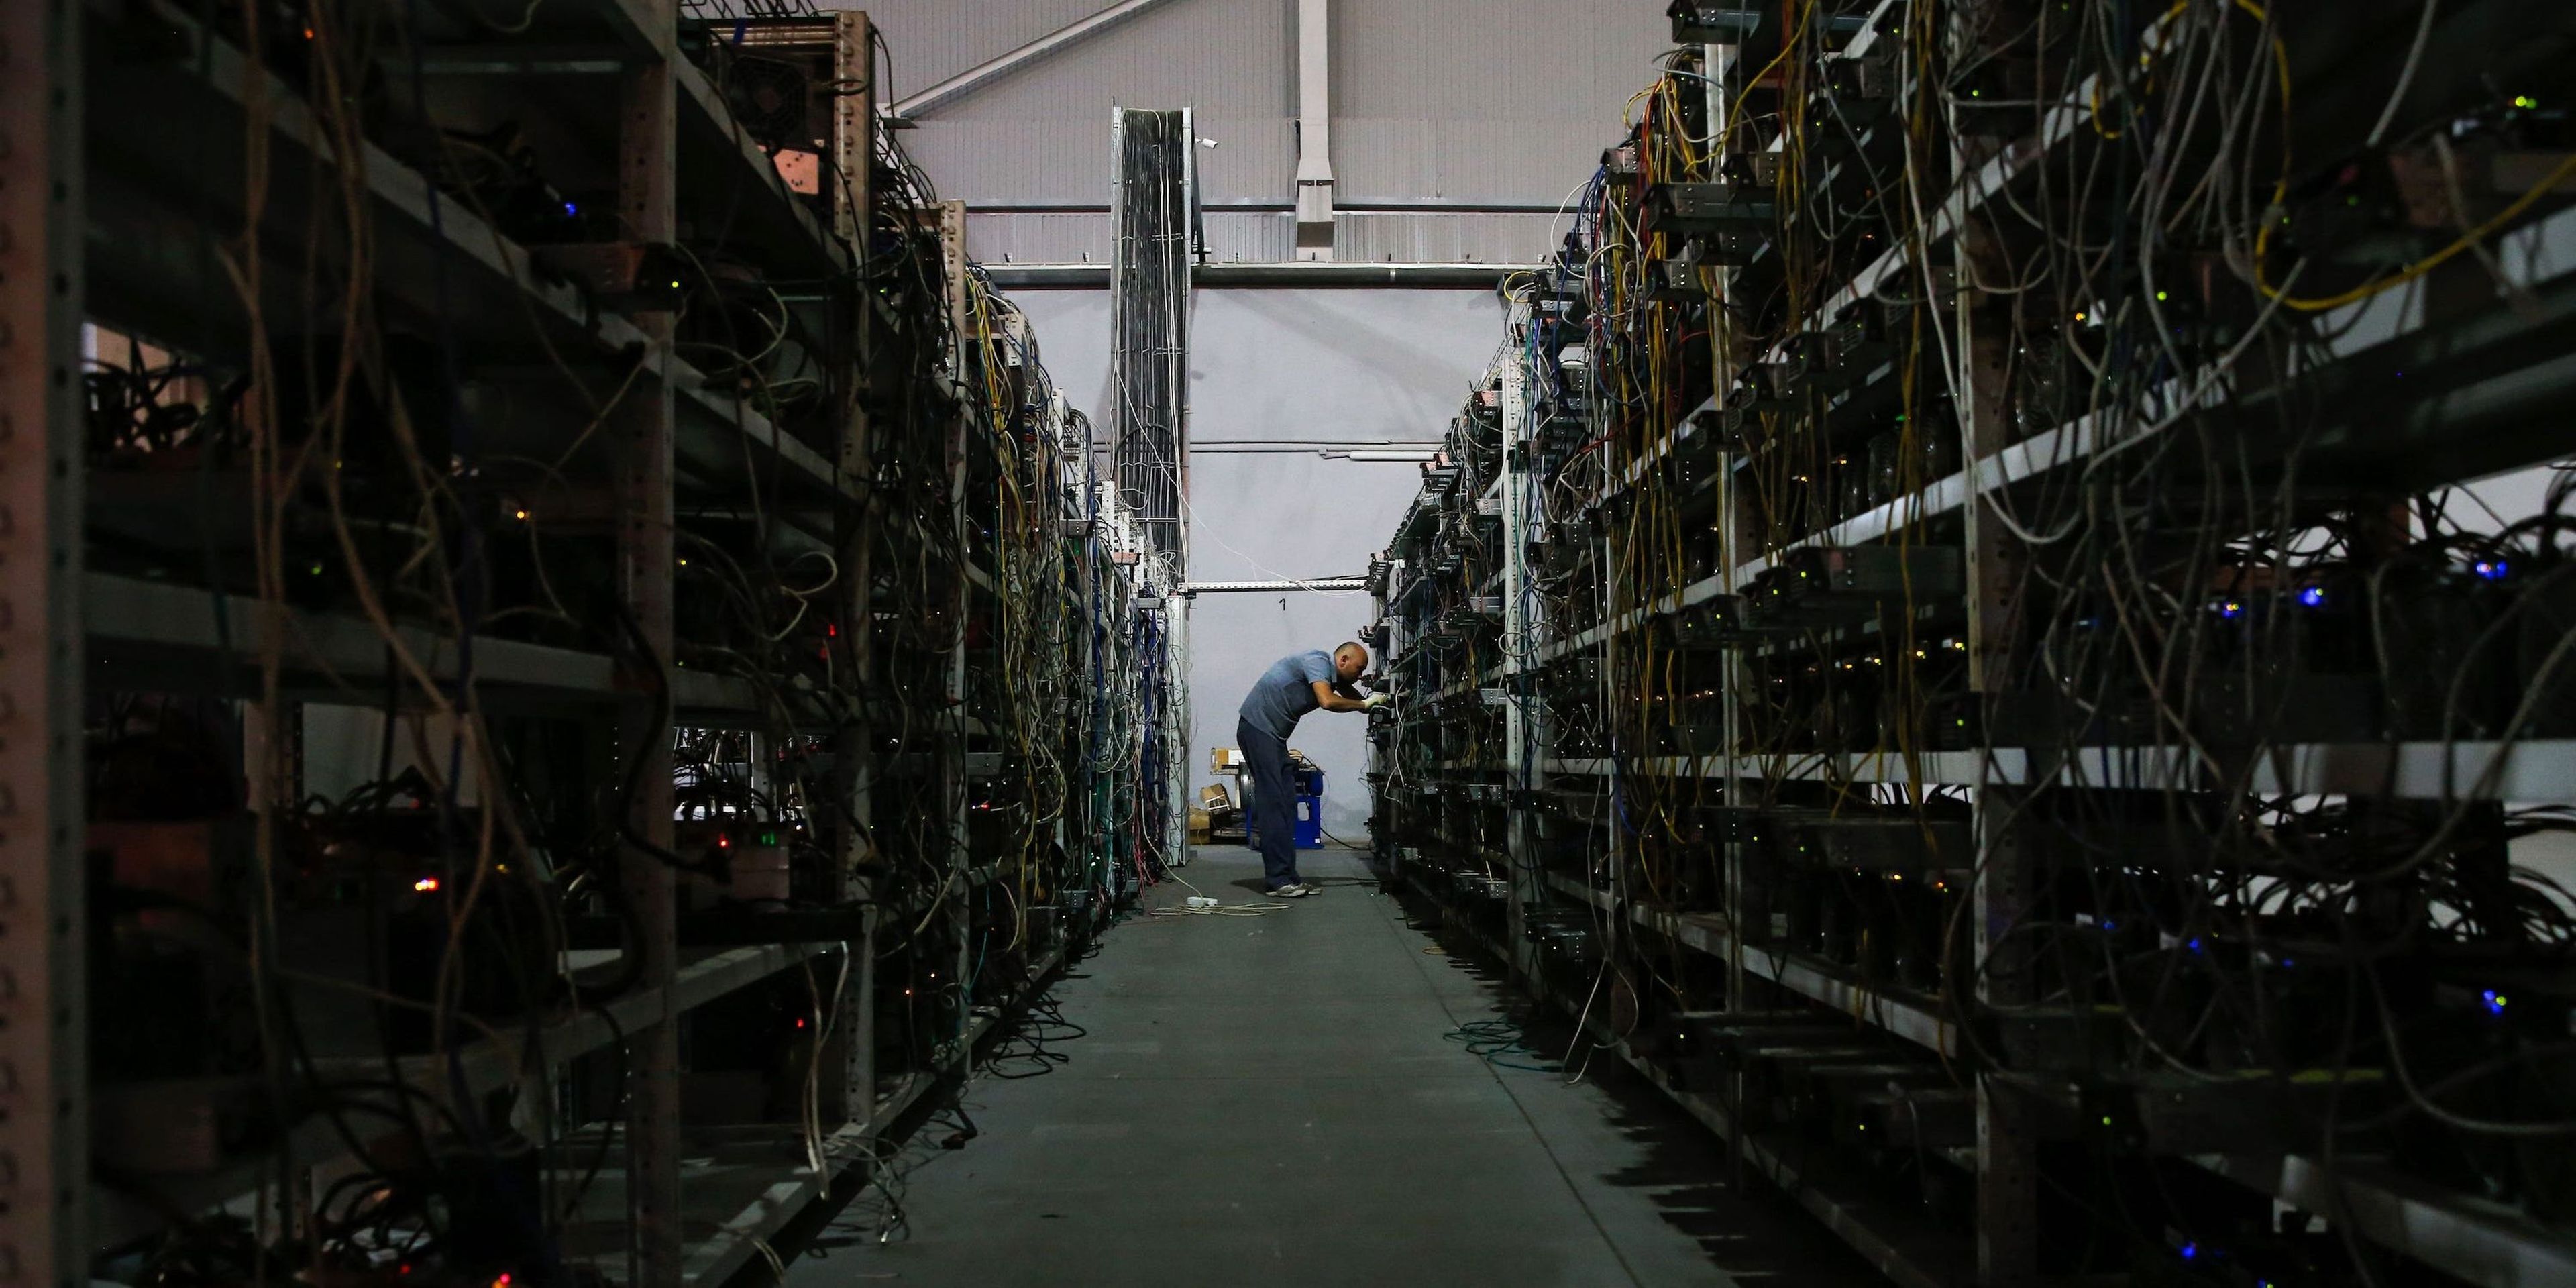 Algunas granjas de bitcoins, como la de la imagen, en Moscú, tienen cientos de ordenadores extrayendo varios bitcoins a la vez. Maxim Zmeyev/AFP, a través de Getty Images